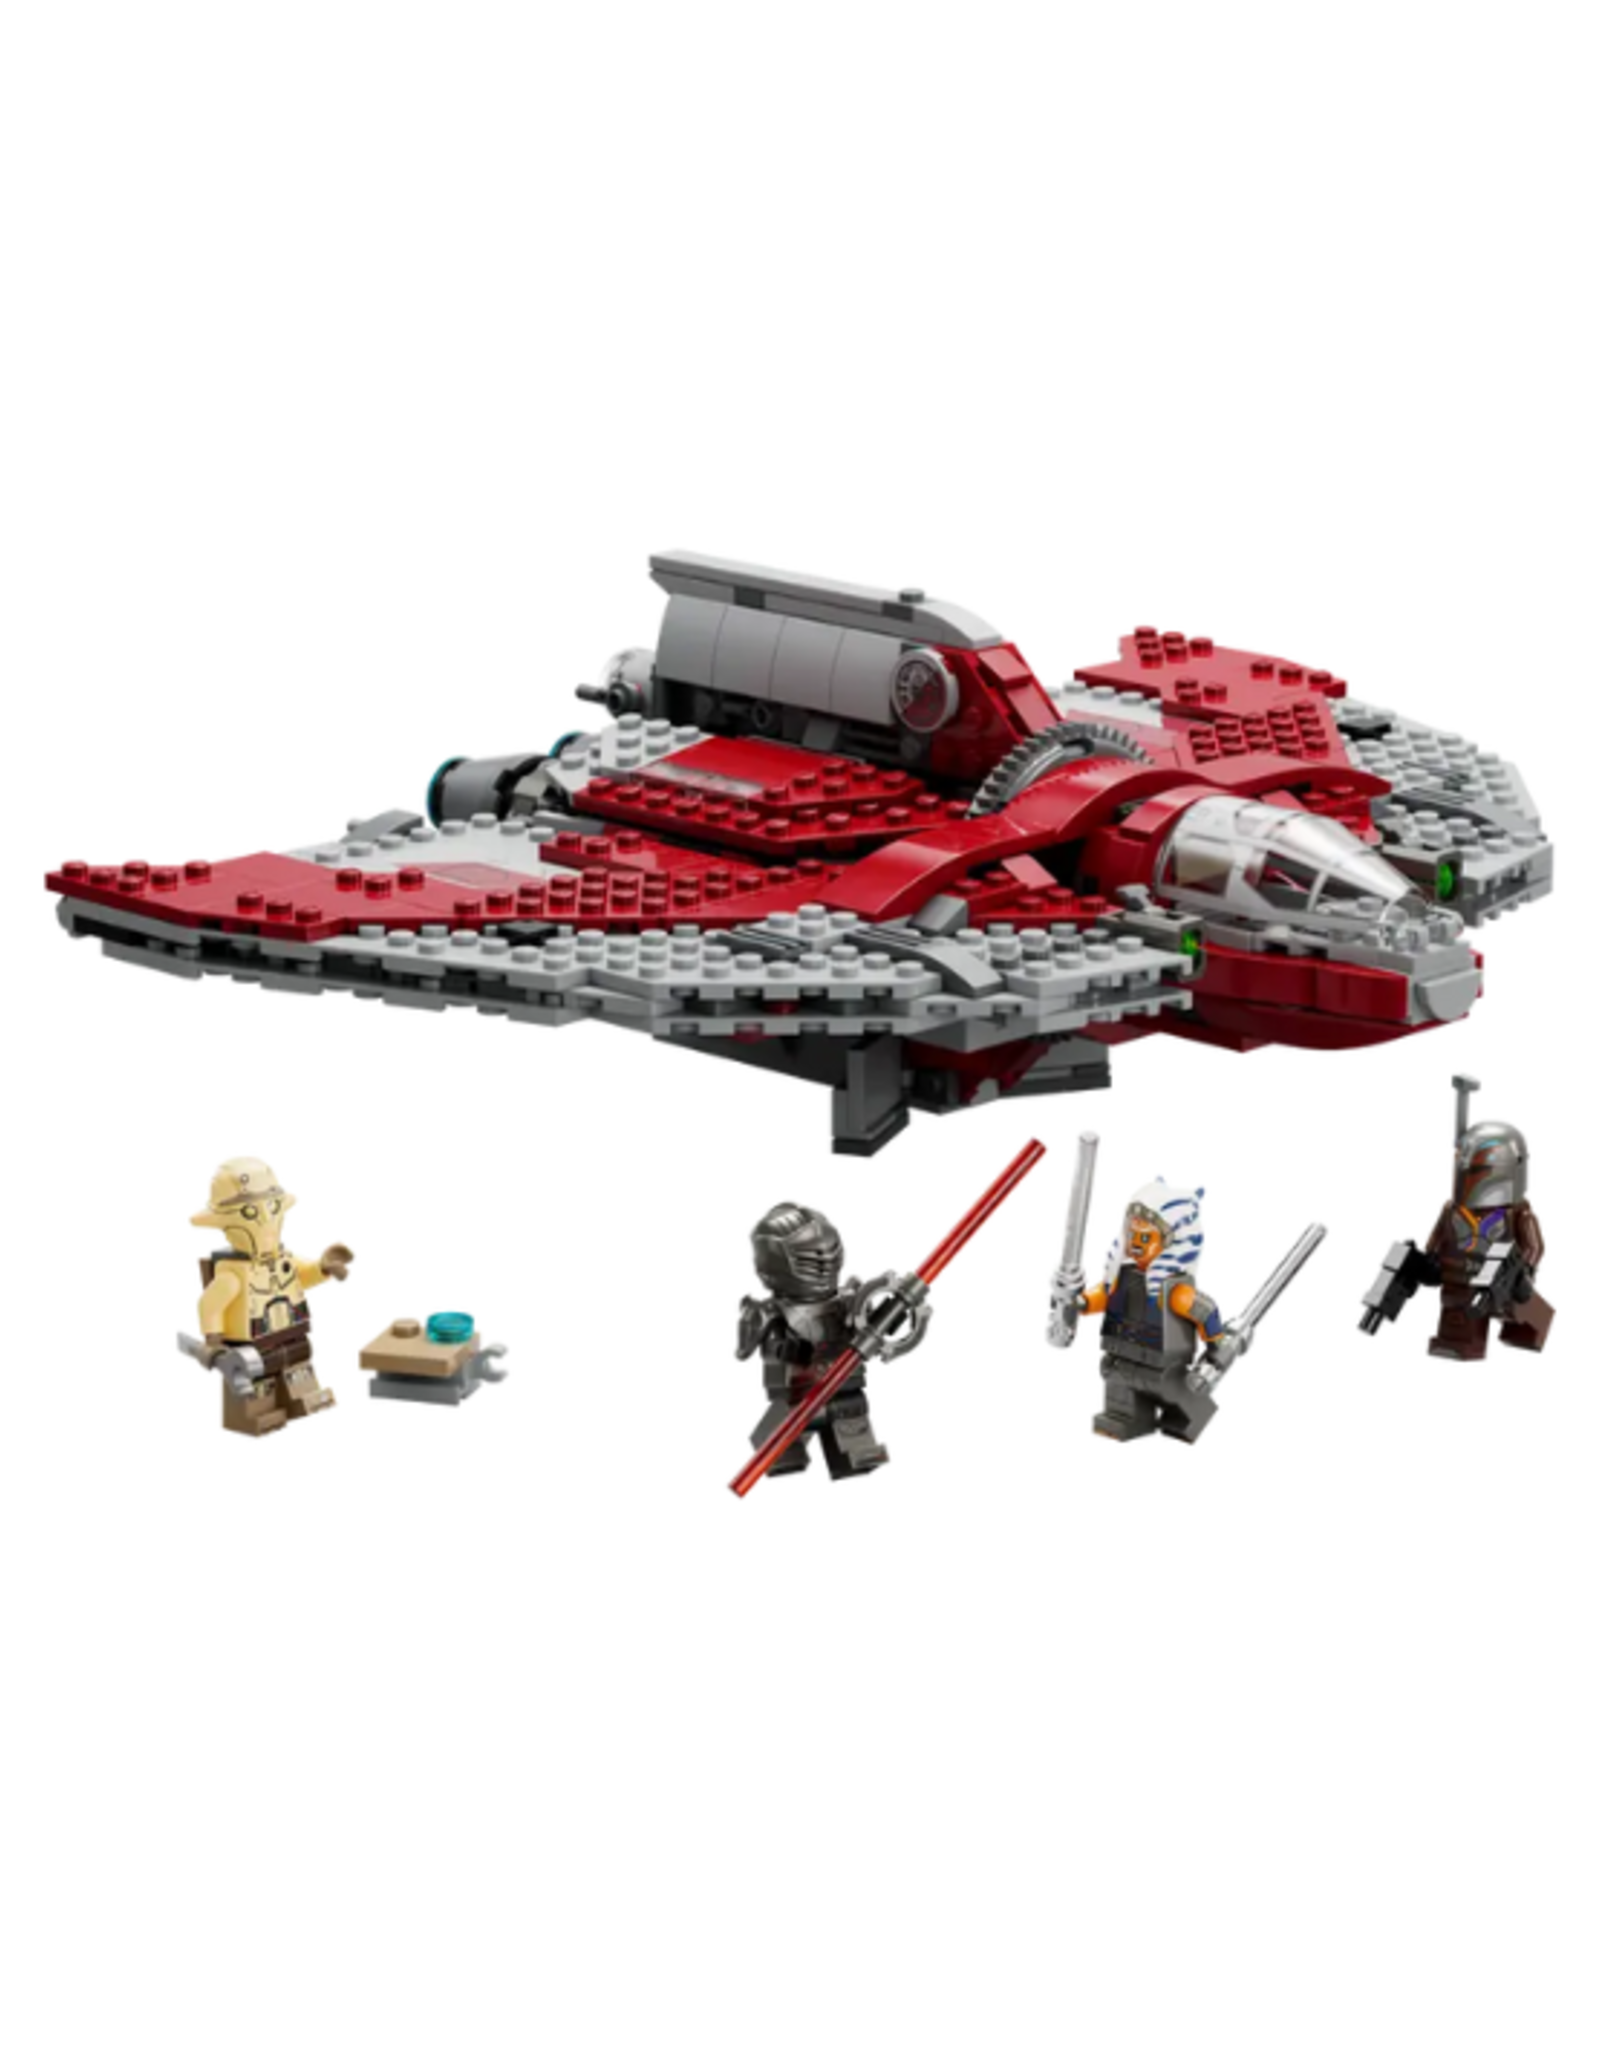 Lego Lego - Star Wars - 75362 - Ahsoka Tano's T-6 Jedi Shuttle